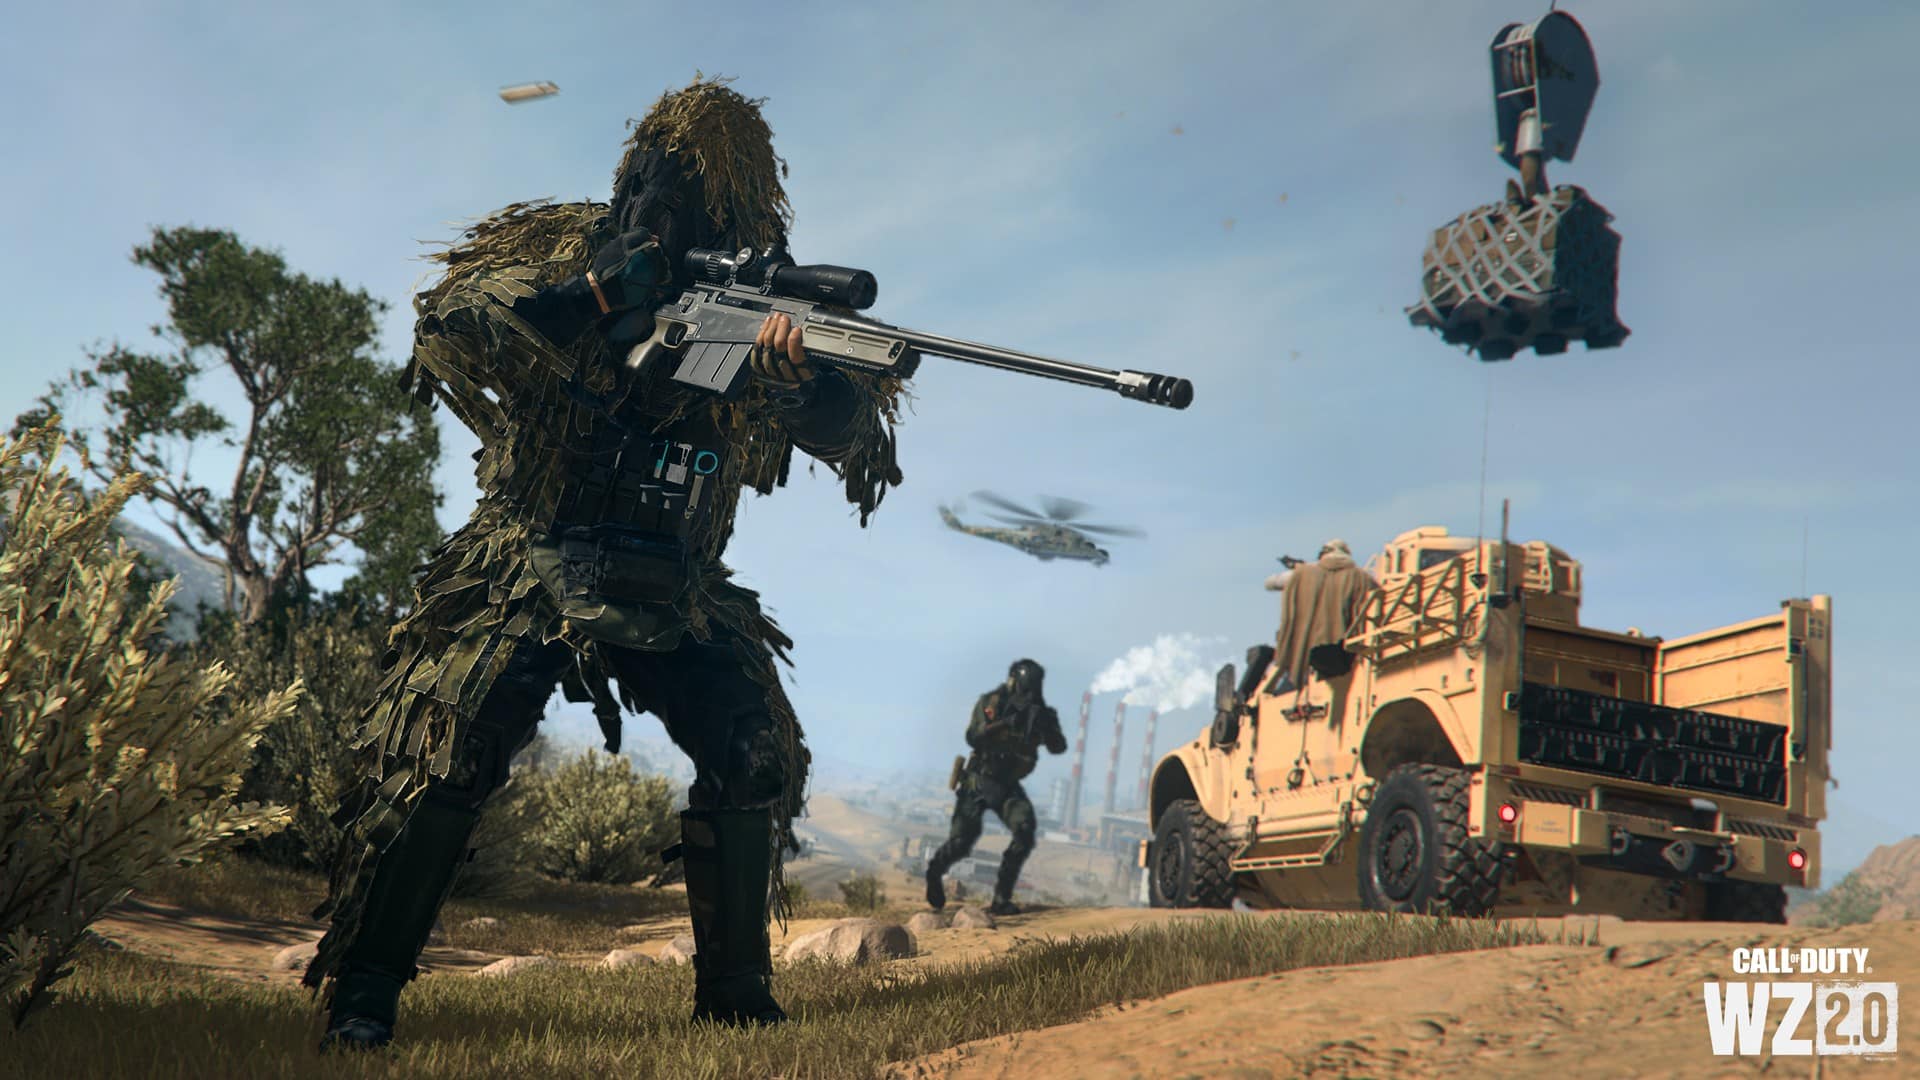 Call of Duty: Warzone 2.0 chega ao Steam e revela seus requisitos